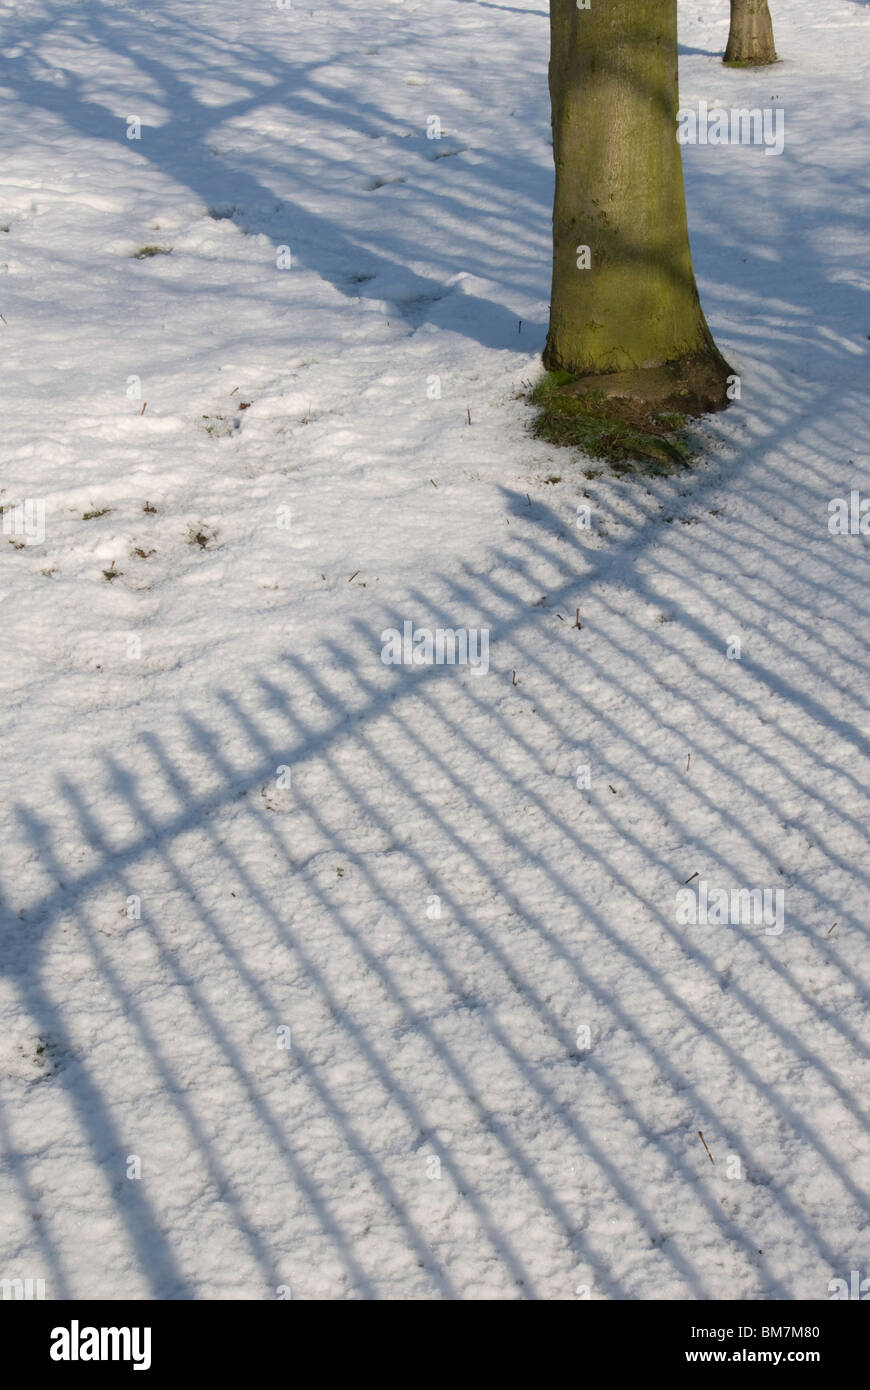 blaue Schatten von Geländern im Schnee mit einem Baumstamm werfen Stockfoto